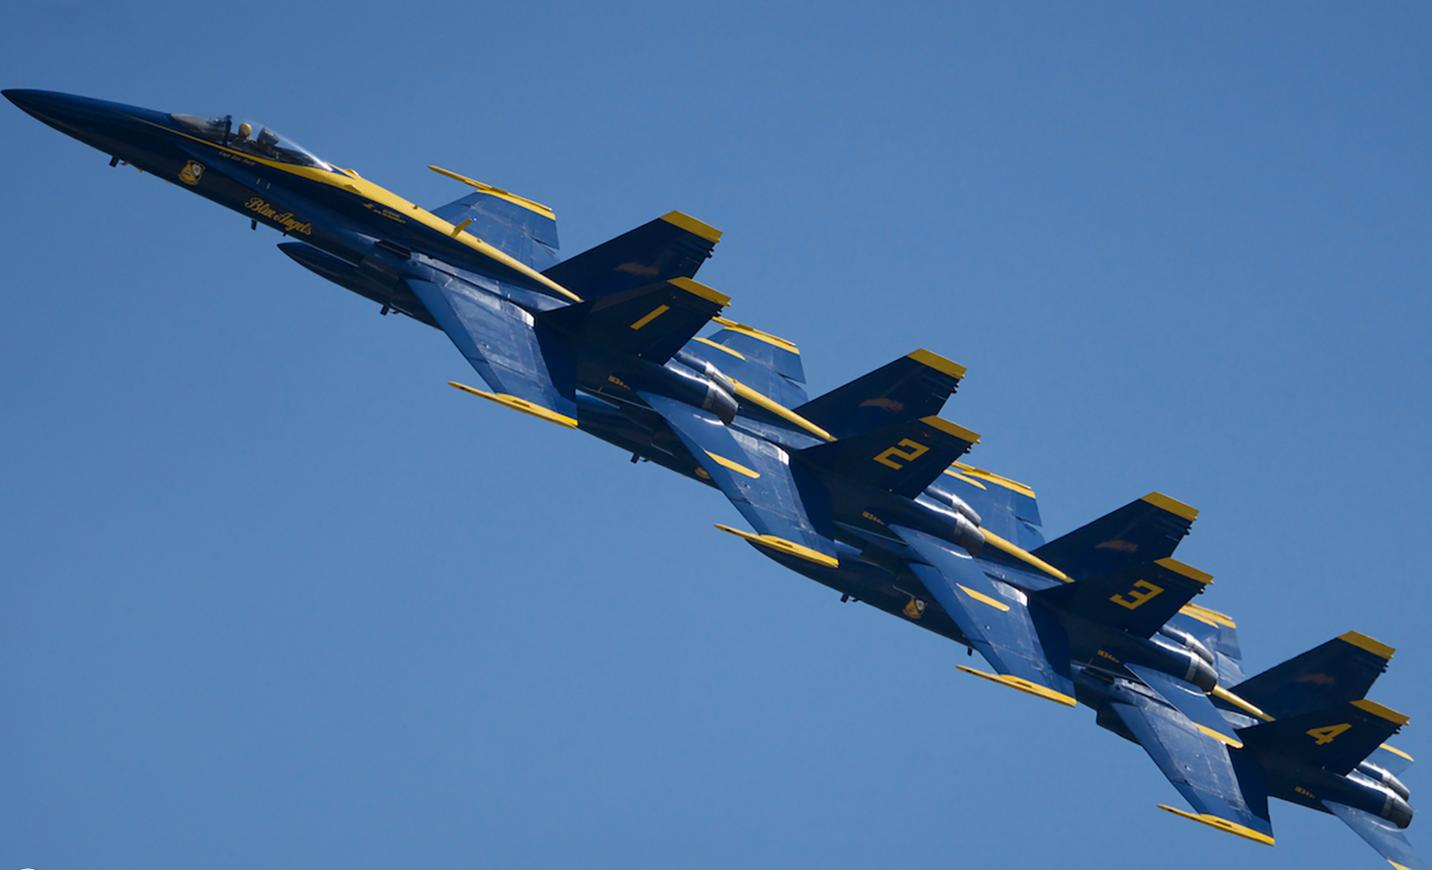 4-ка демонстрационно-пилотажной группы ВМС США Blue Angels (это тот случай, когда расстояние от законцовки крыла одного самолета до кабины соседнего доходит до 45 см) на аэрошоу Cape Girardeau Air Festival в Монтане, фото сделано 16 мая 2019 года